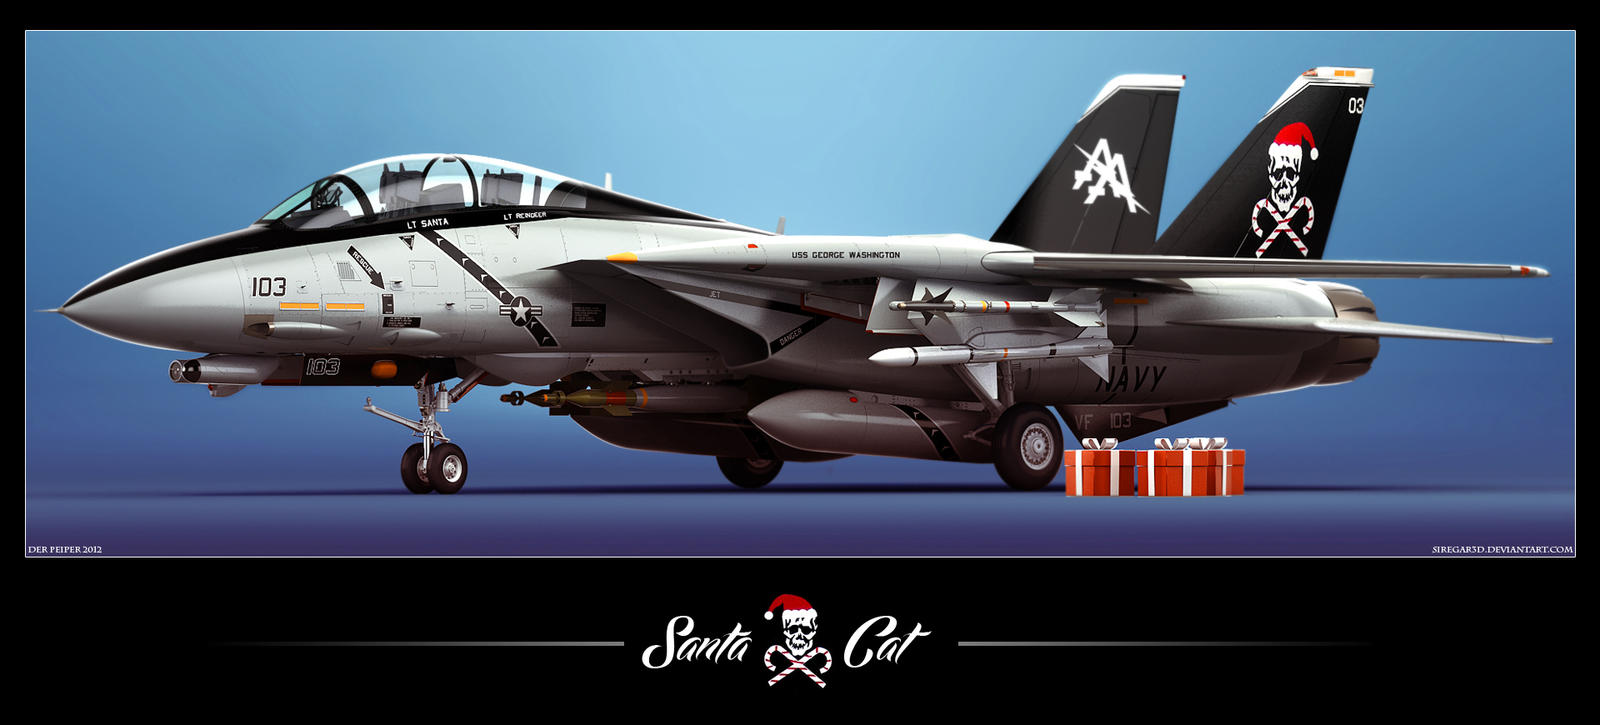 F-14D Santa Cat